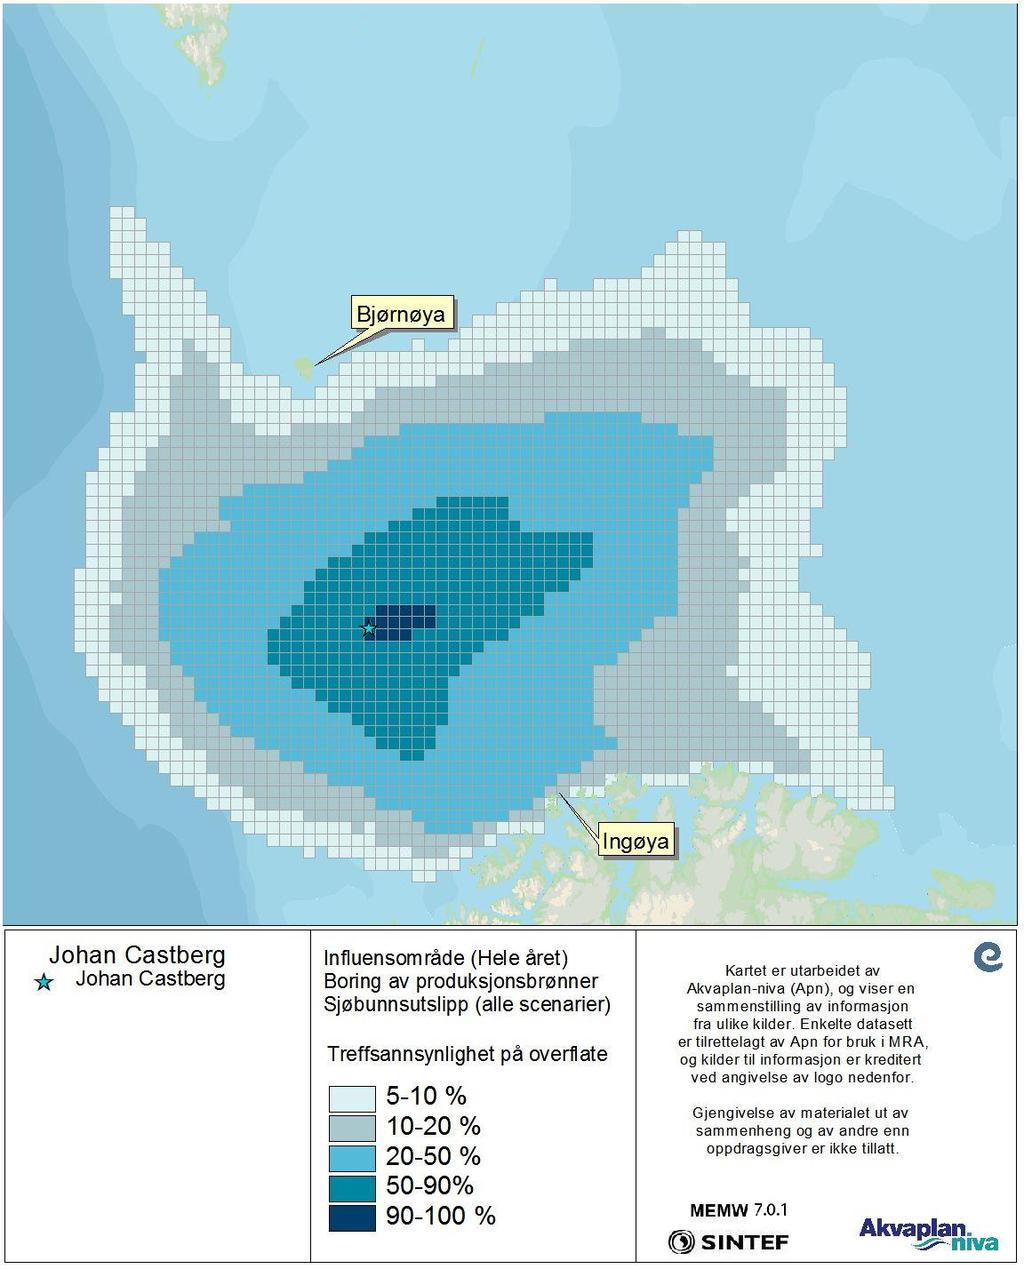 Figur 19 DFU-1, sjøbunnsutslipp (alle Scenarier-statistikk for hele året)- Treffsannsynlighet av mer enn 1 tonn olje på overflaten i en